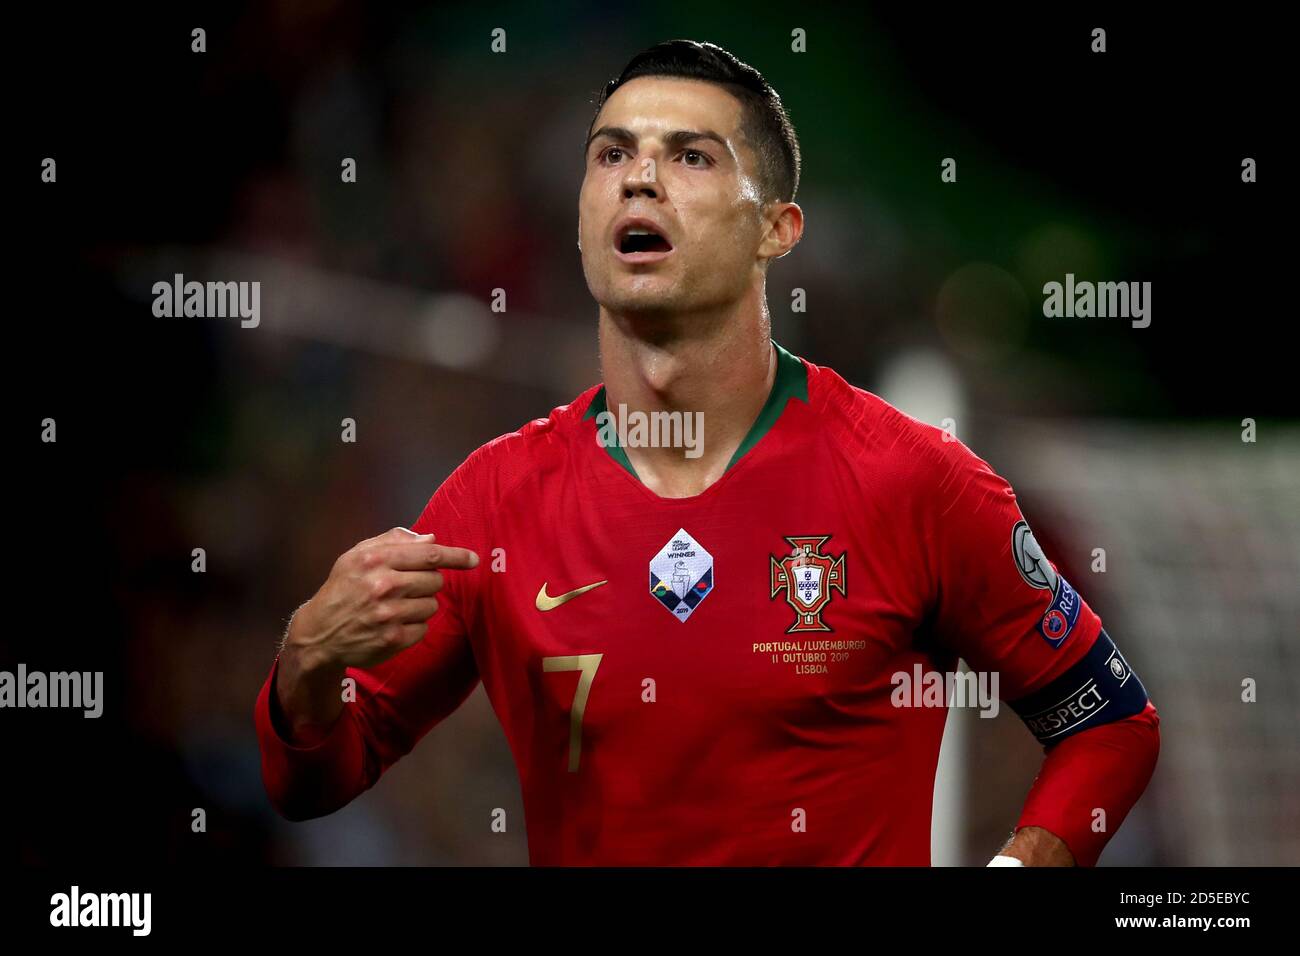 panorama cuenco Pila de Faro, Portugal. 13 de octubre de 2020. La estrella portuguesa de fútbol  Cristiano Ronaldo ha obtenido resultados positivos para COVID-19, informó  la Federación PortugalÃ•s de Fútbol en un comunicado en Lisboa, Portugal,